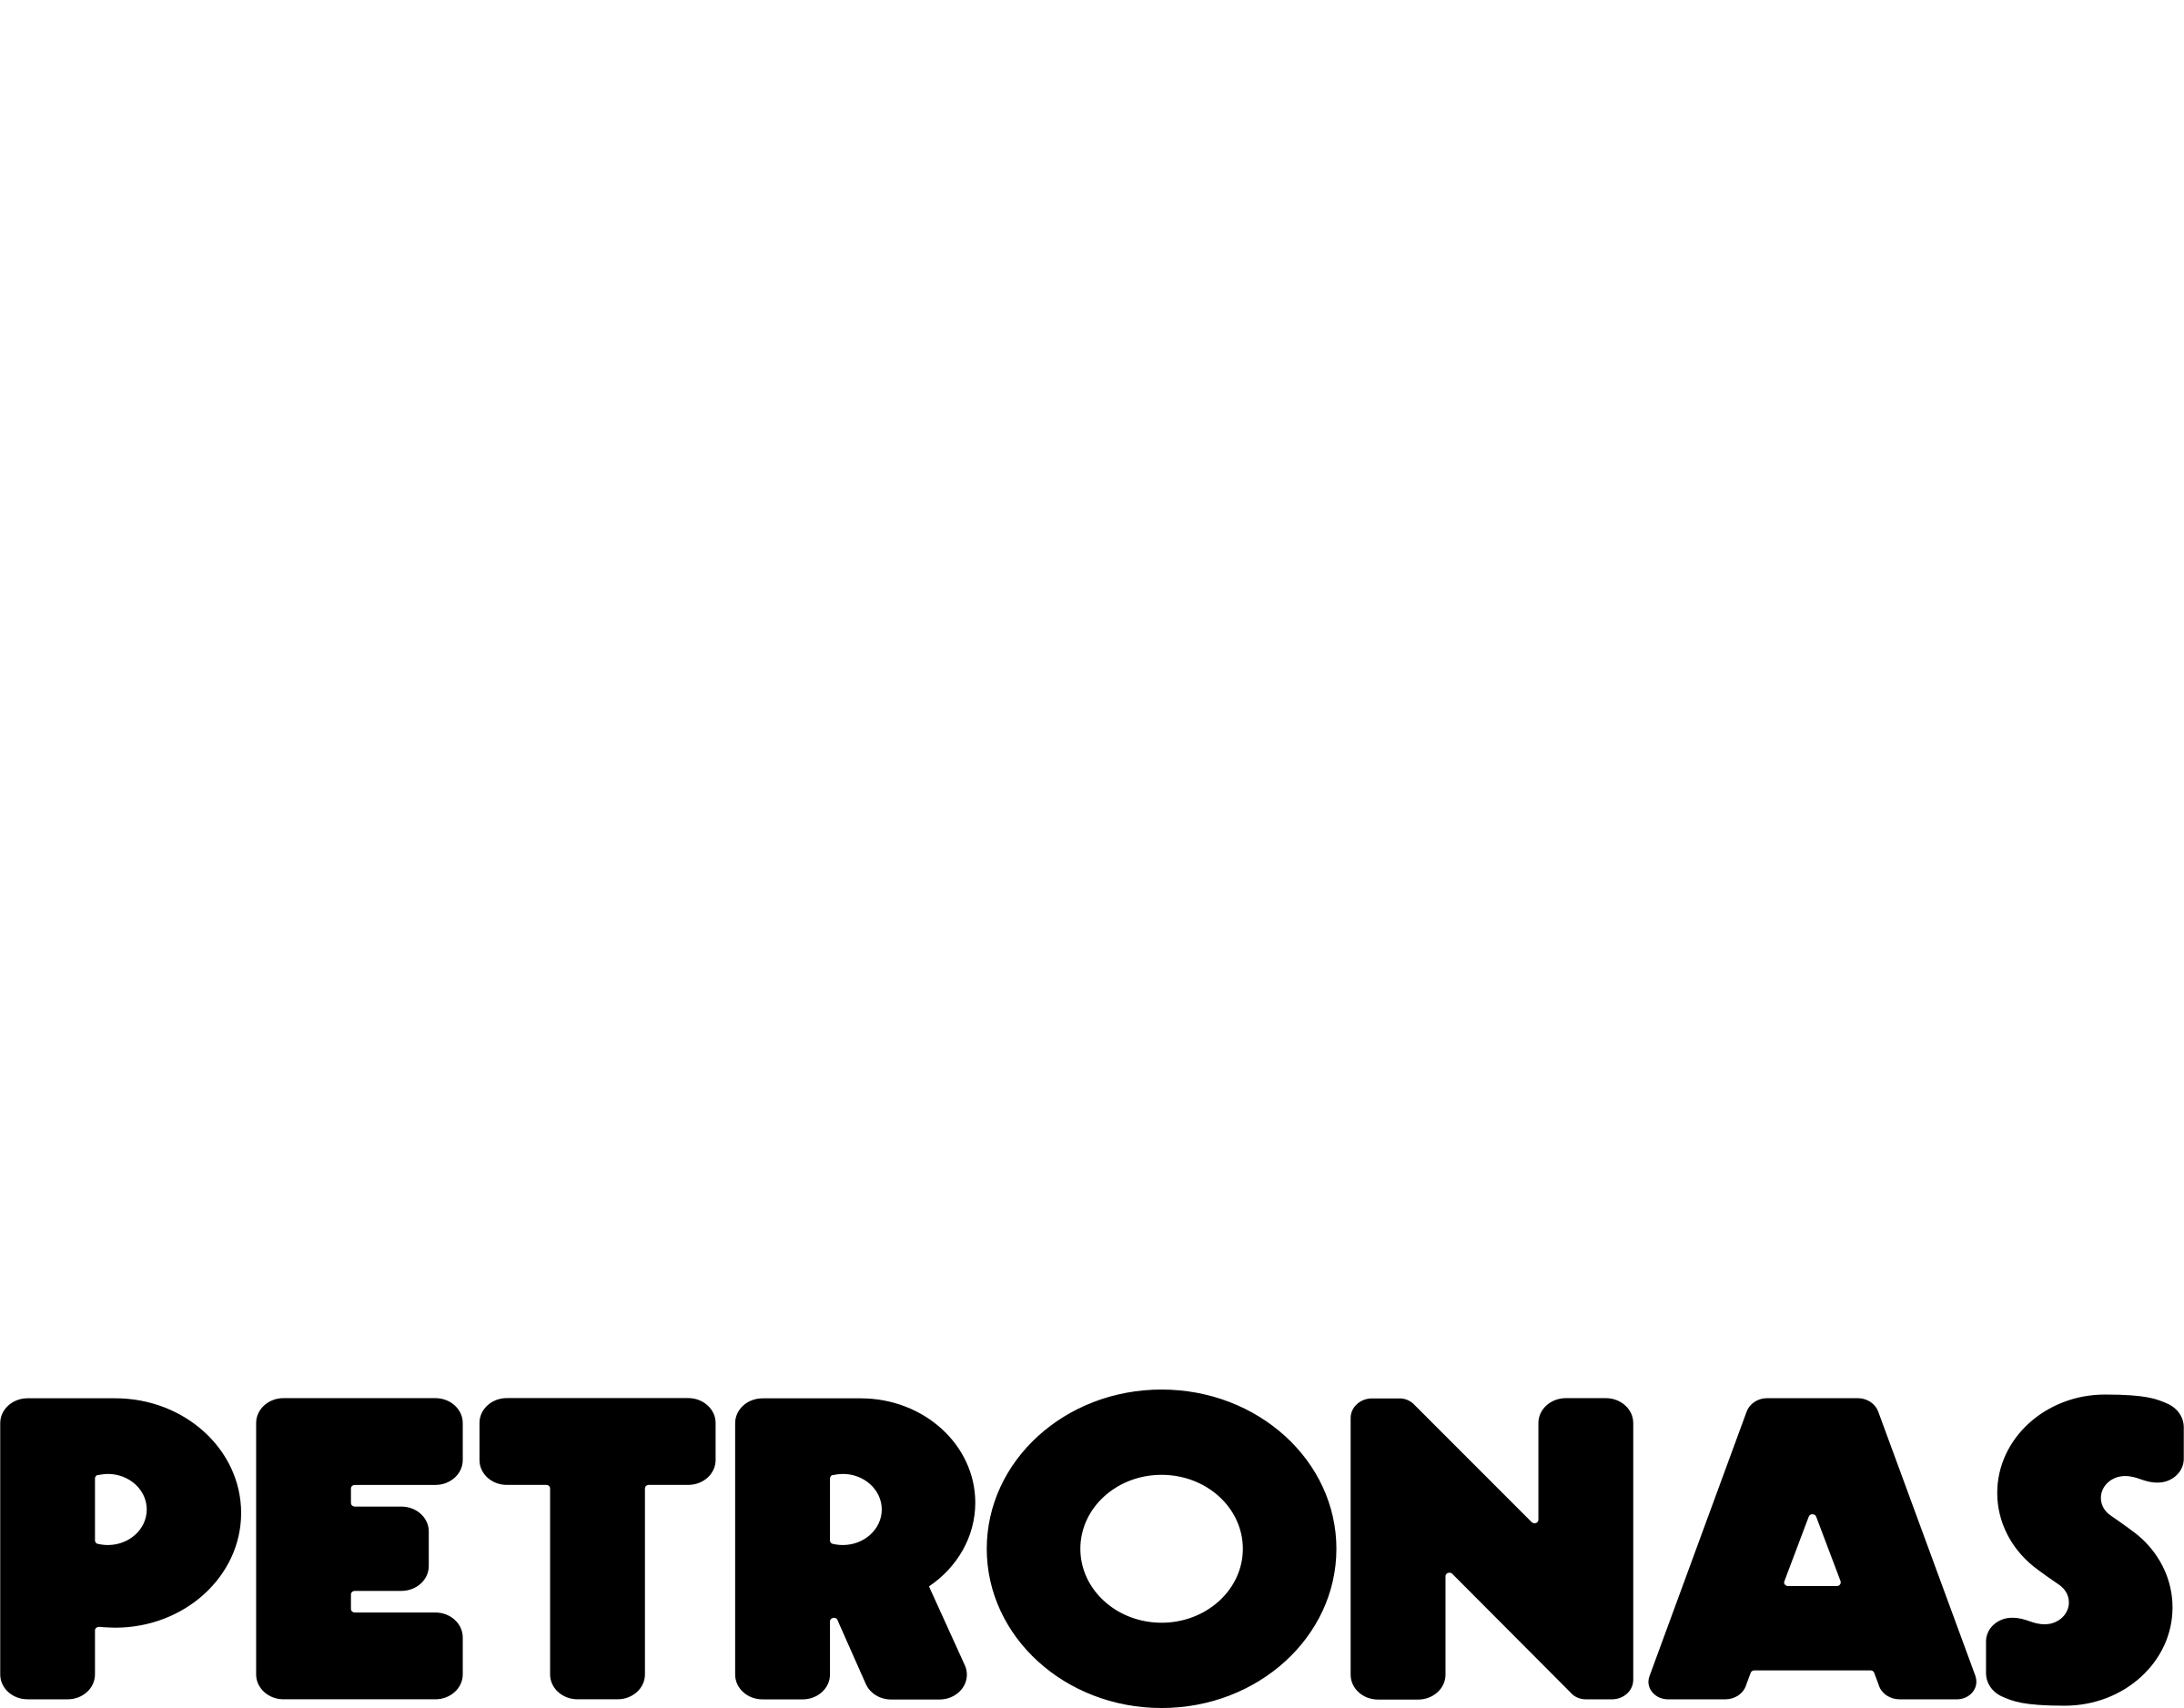 Petronas Logo - Petronas Logo PNG Transparent & SVG Vector